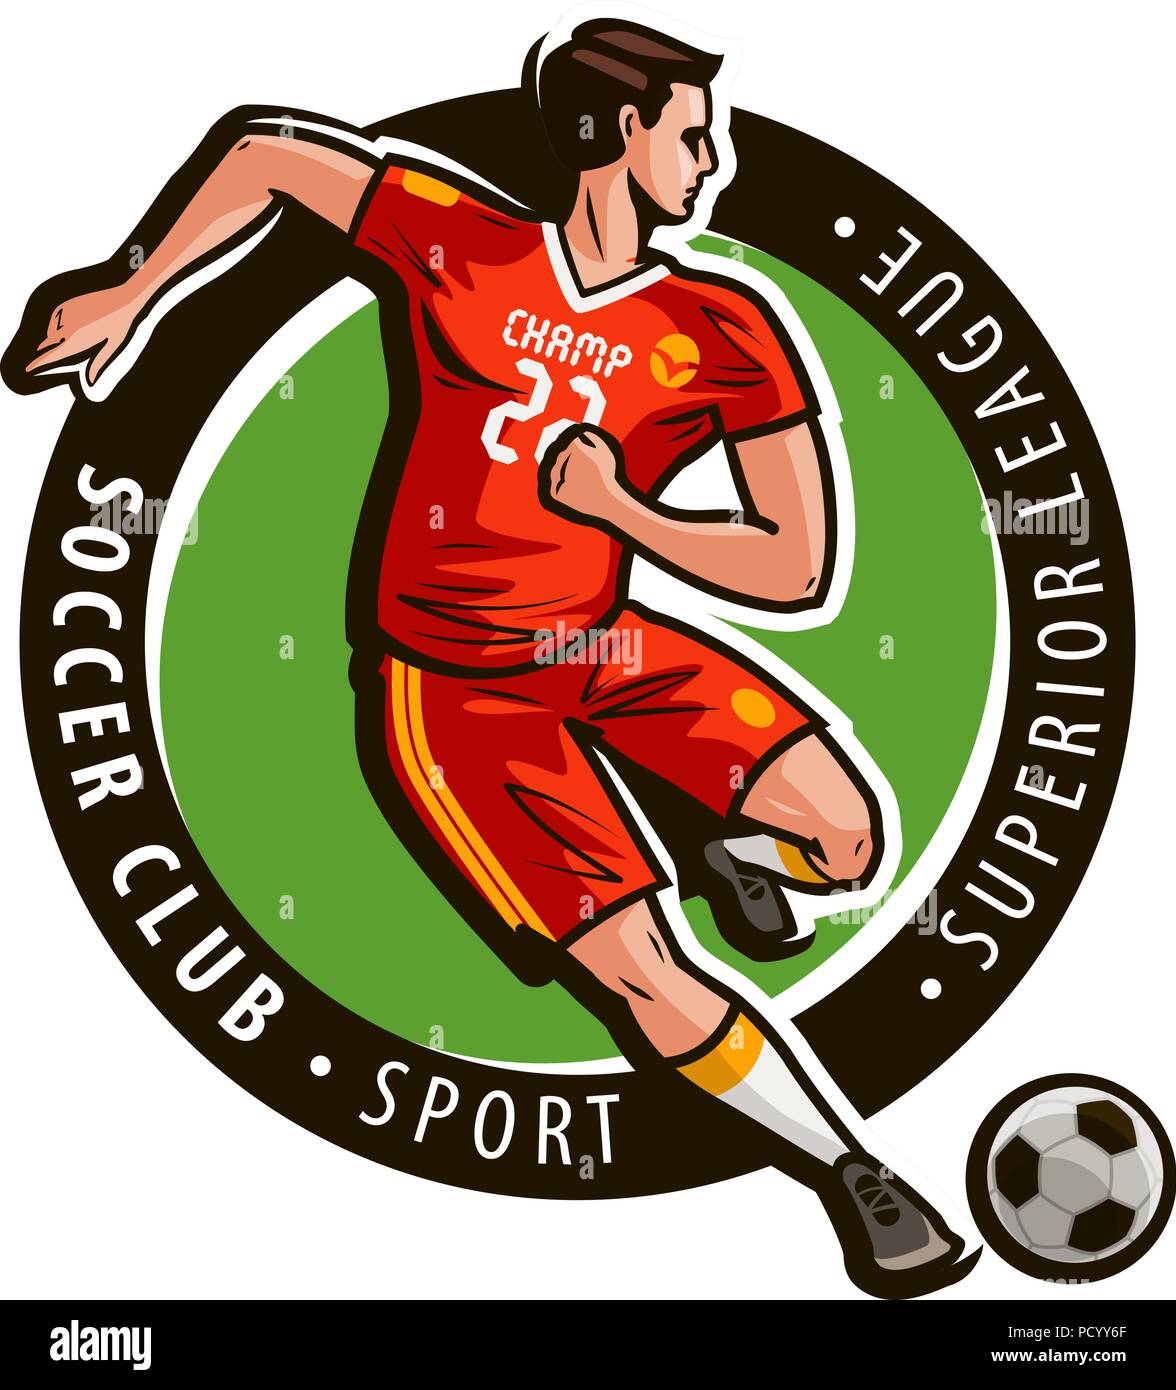 Club di Calcio logo o etichetta. Sport concept. Il Mascot illustrazione vettoriale Illustrazione Vettoriale